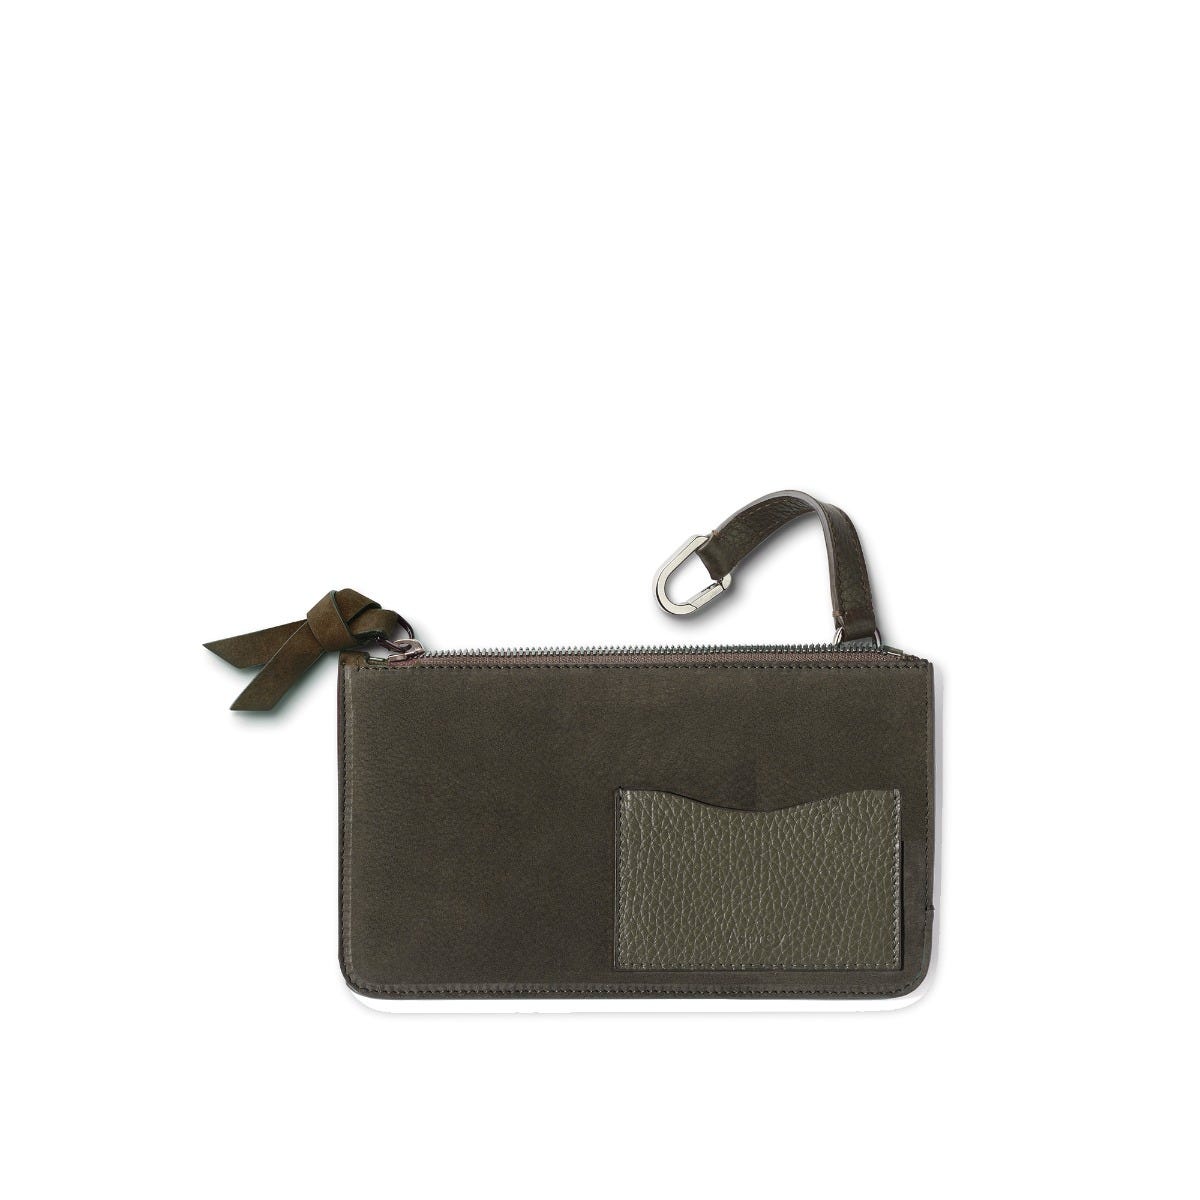 GMT Keys Pouch in Soft Grain Leather & Nubuck